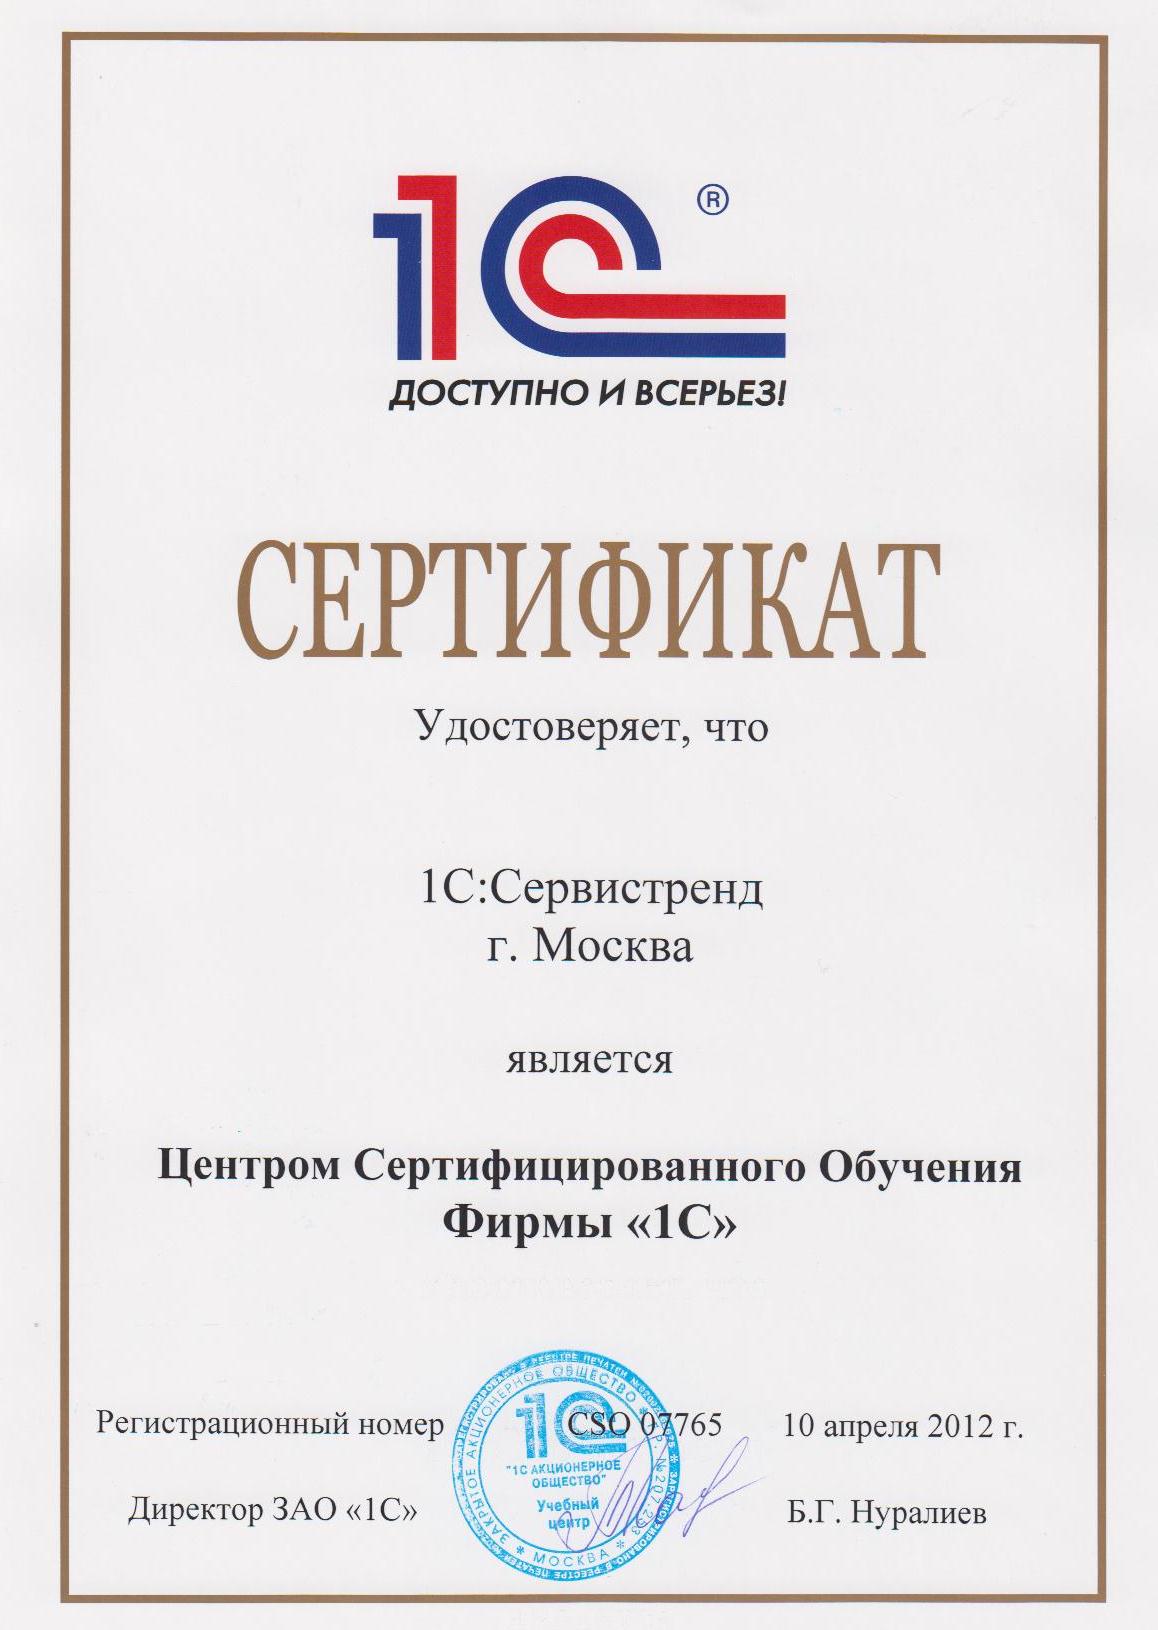 Сертификат Сервистренд - Центр Сертифицированного Обучения фирмы 1С